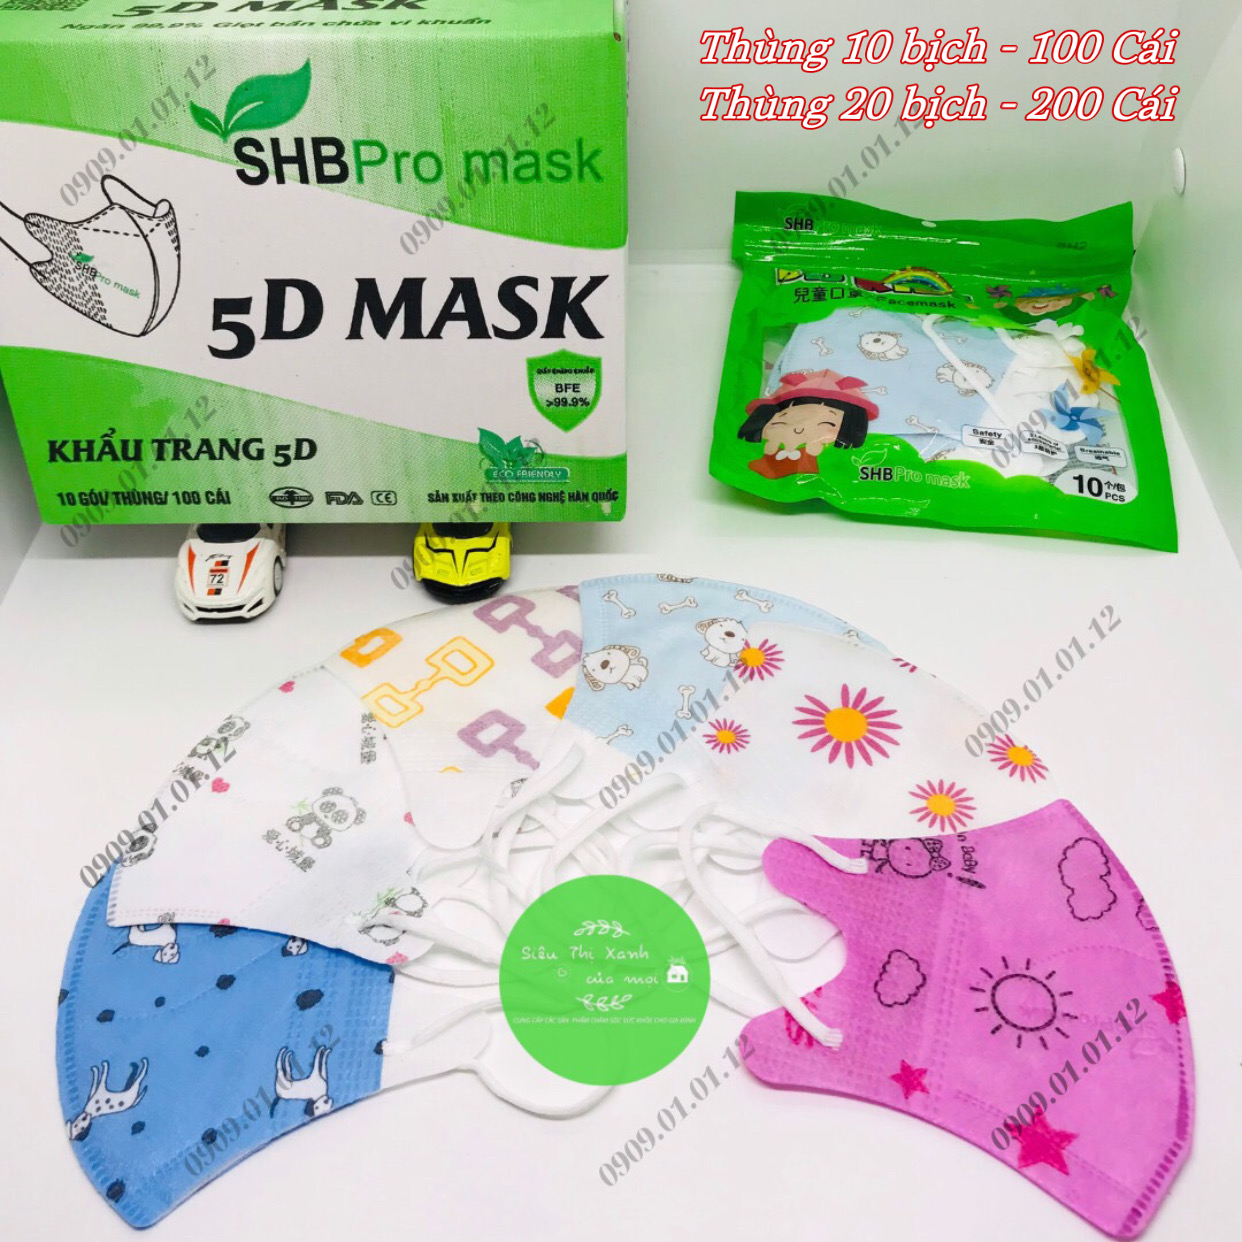 (Thùng 100 cái) Khẩu trang 5D trẻ em SHB Promask chính hãng, 5d cho bé từ 3 - 7 tuổi